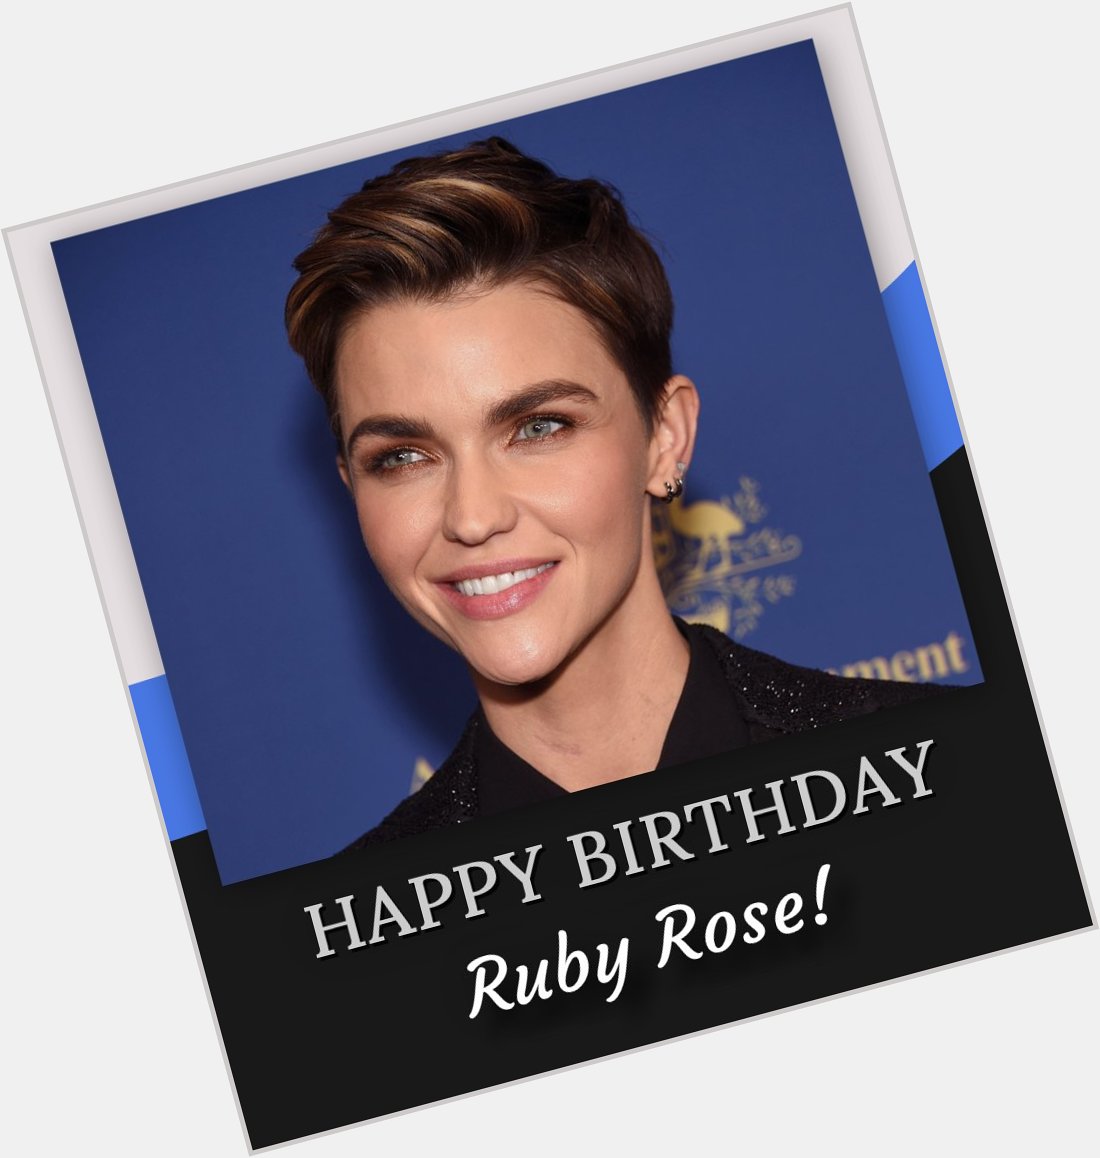 Happy birthday, Ruby Rose! 